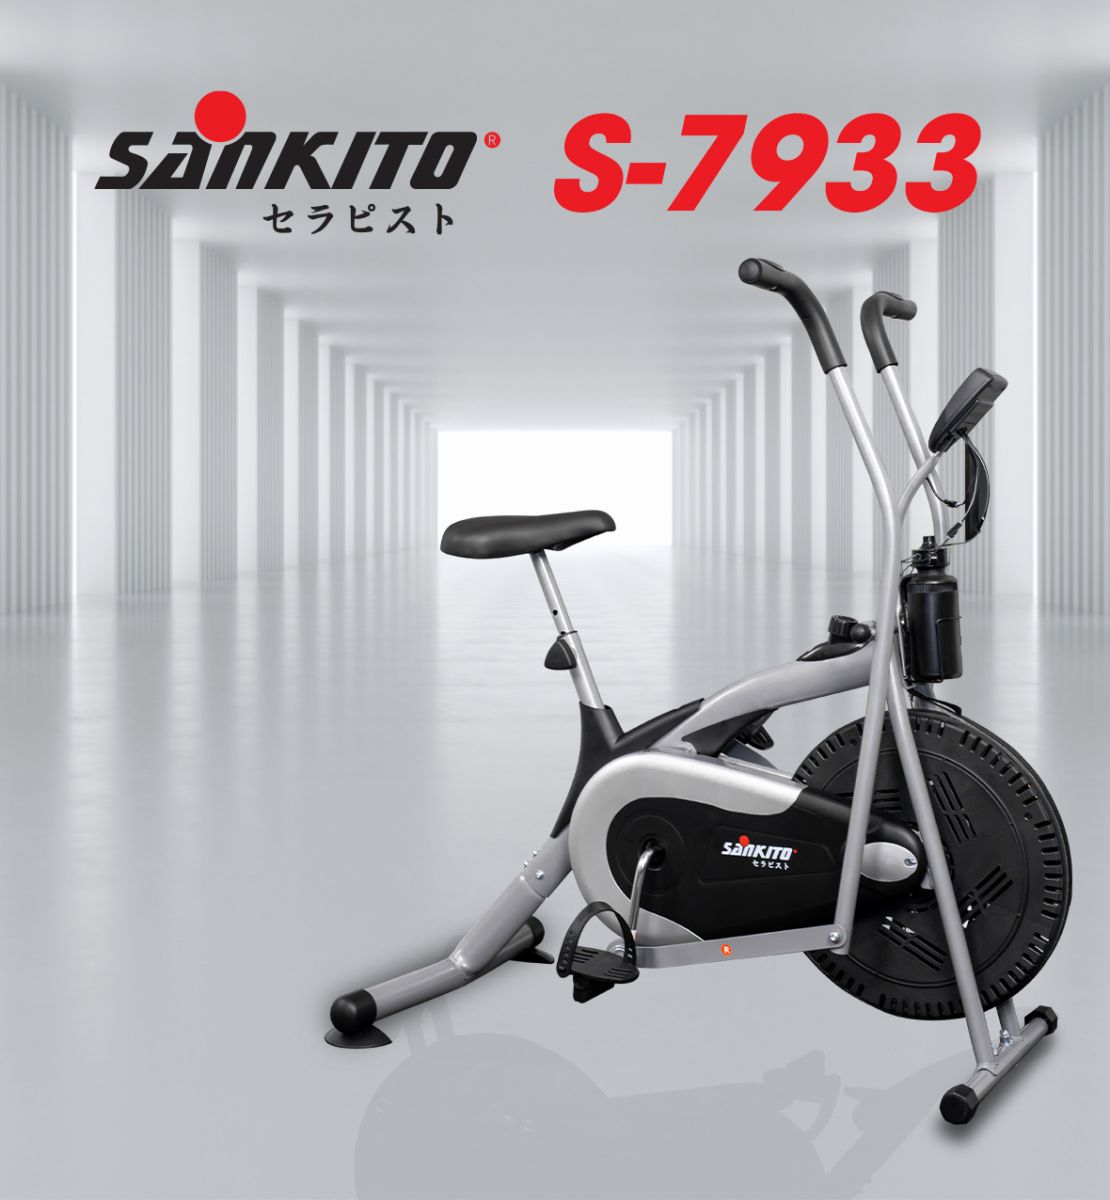 Xe đạp tập tại nhà Sankito S-7933 | Thiết kế gọn nhẹ